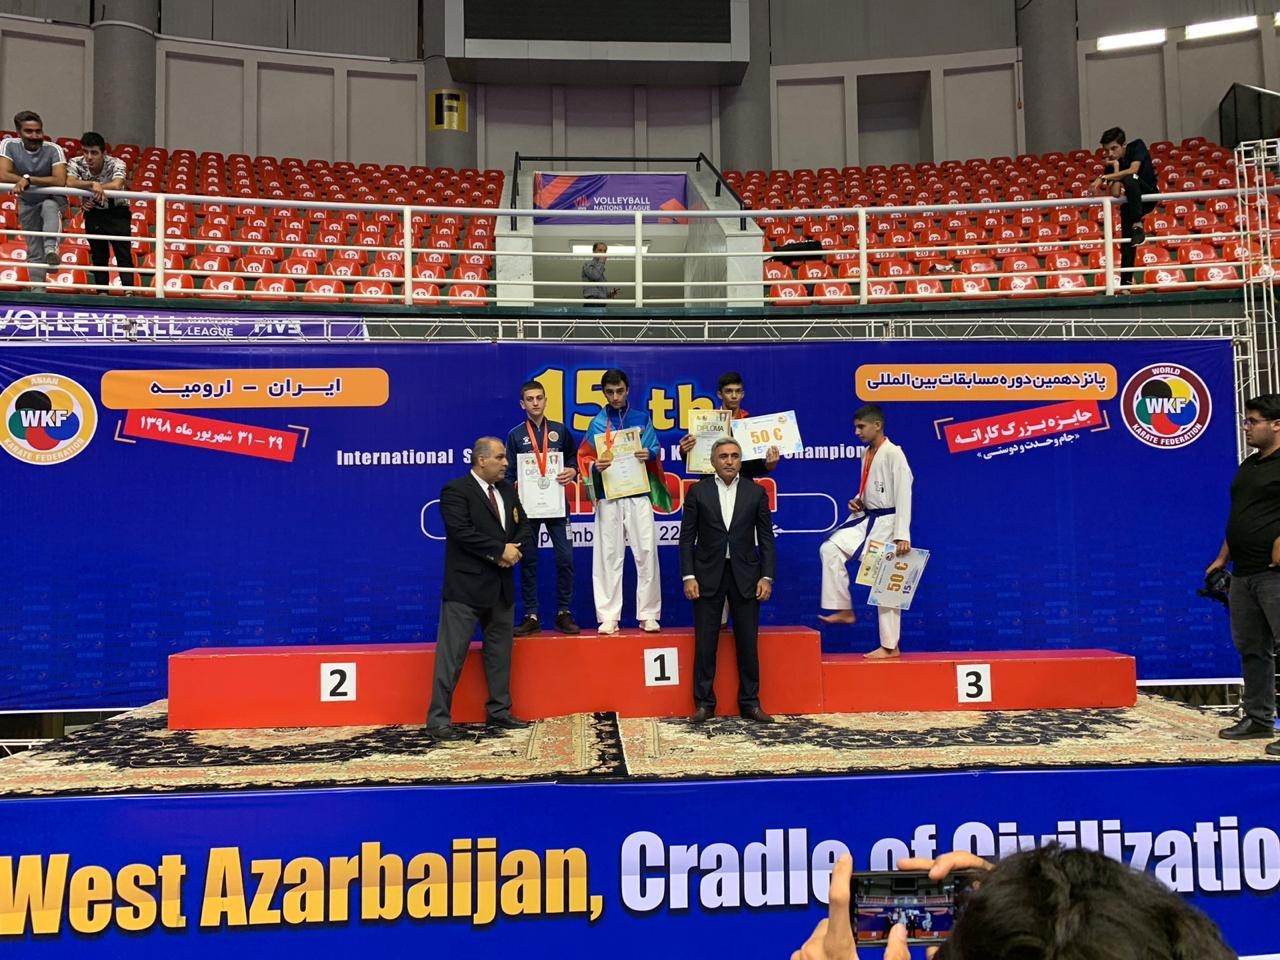 Azərbaycanlı karateçi ermənini məğlub edərək qızıl medal qazanıb - FOTO